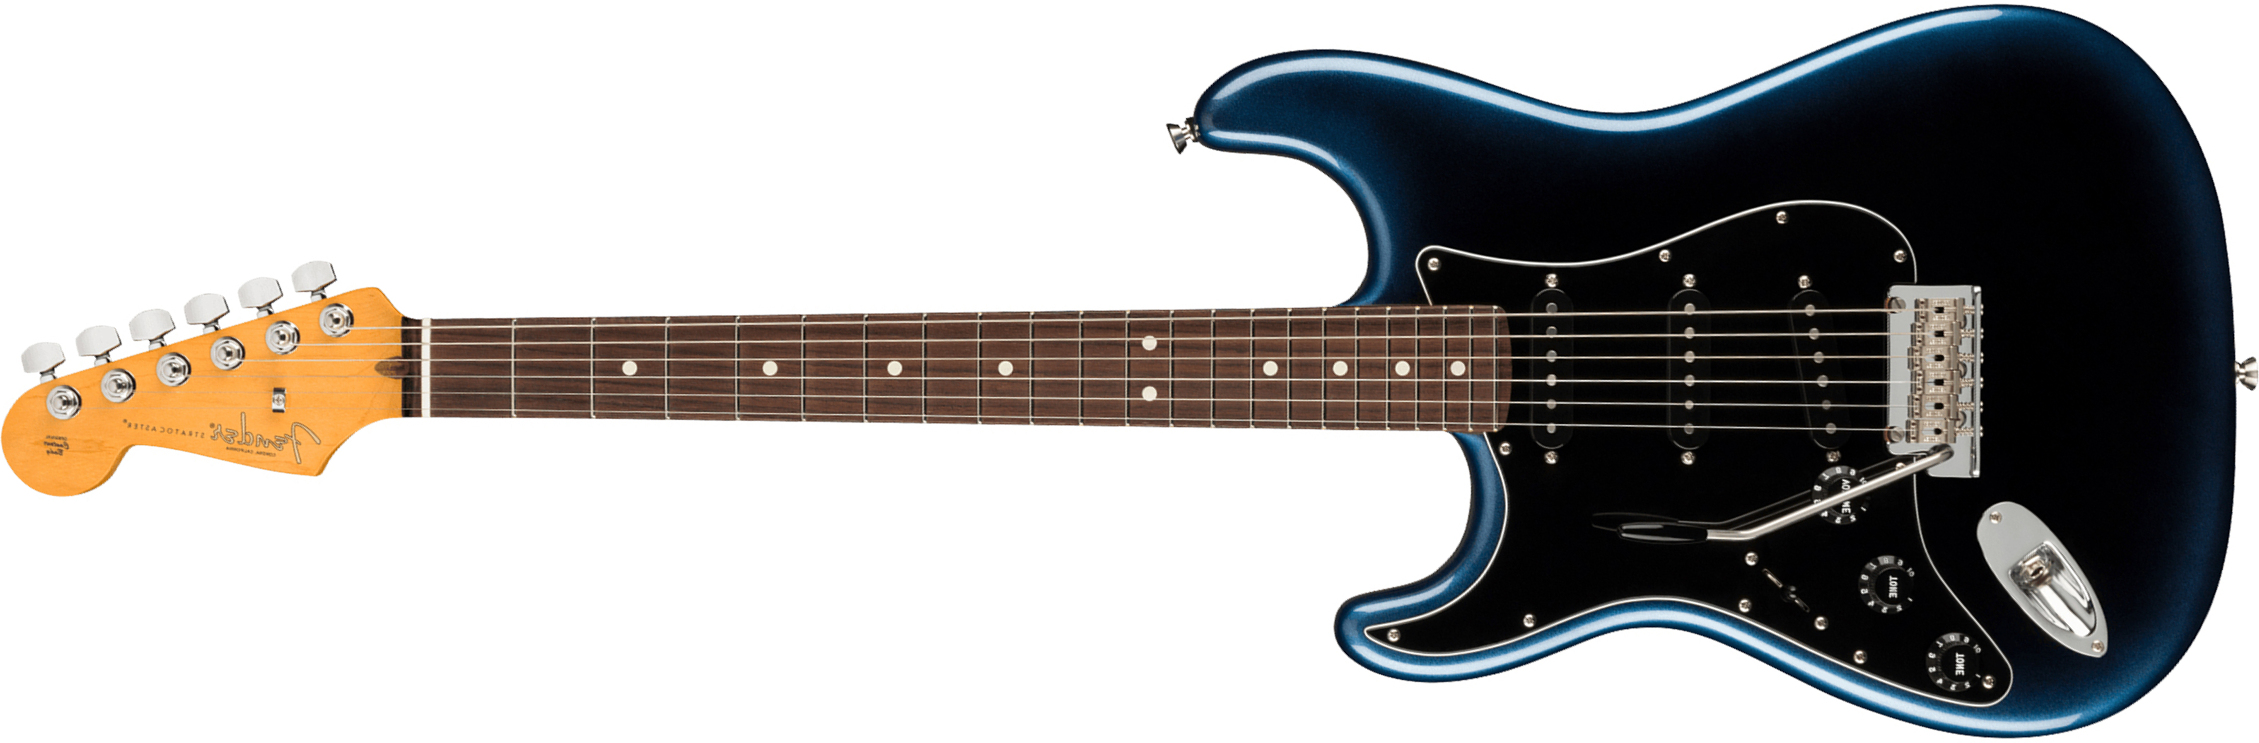 Fender Strat American Professional Ii Lh Gaucher Usa Rw - Dark Night - E-Gitarre für Linkshänder - Main picture